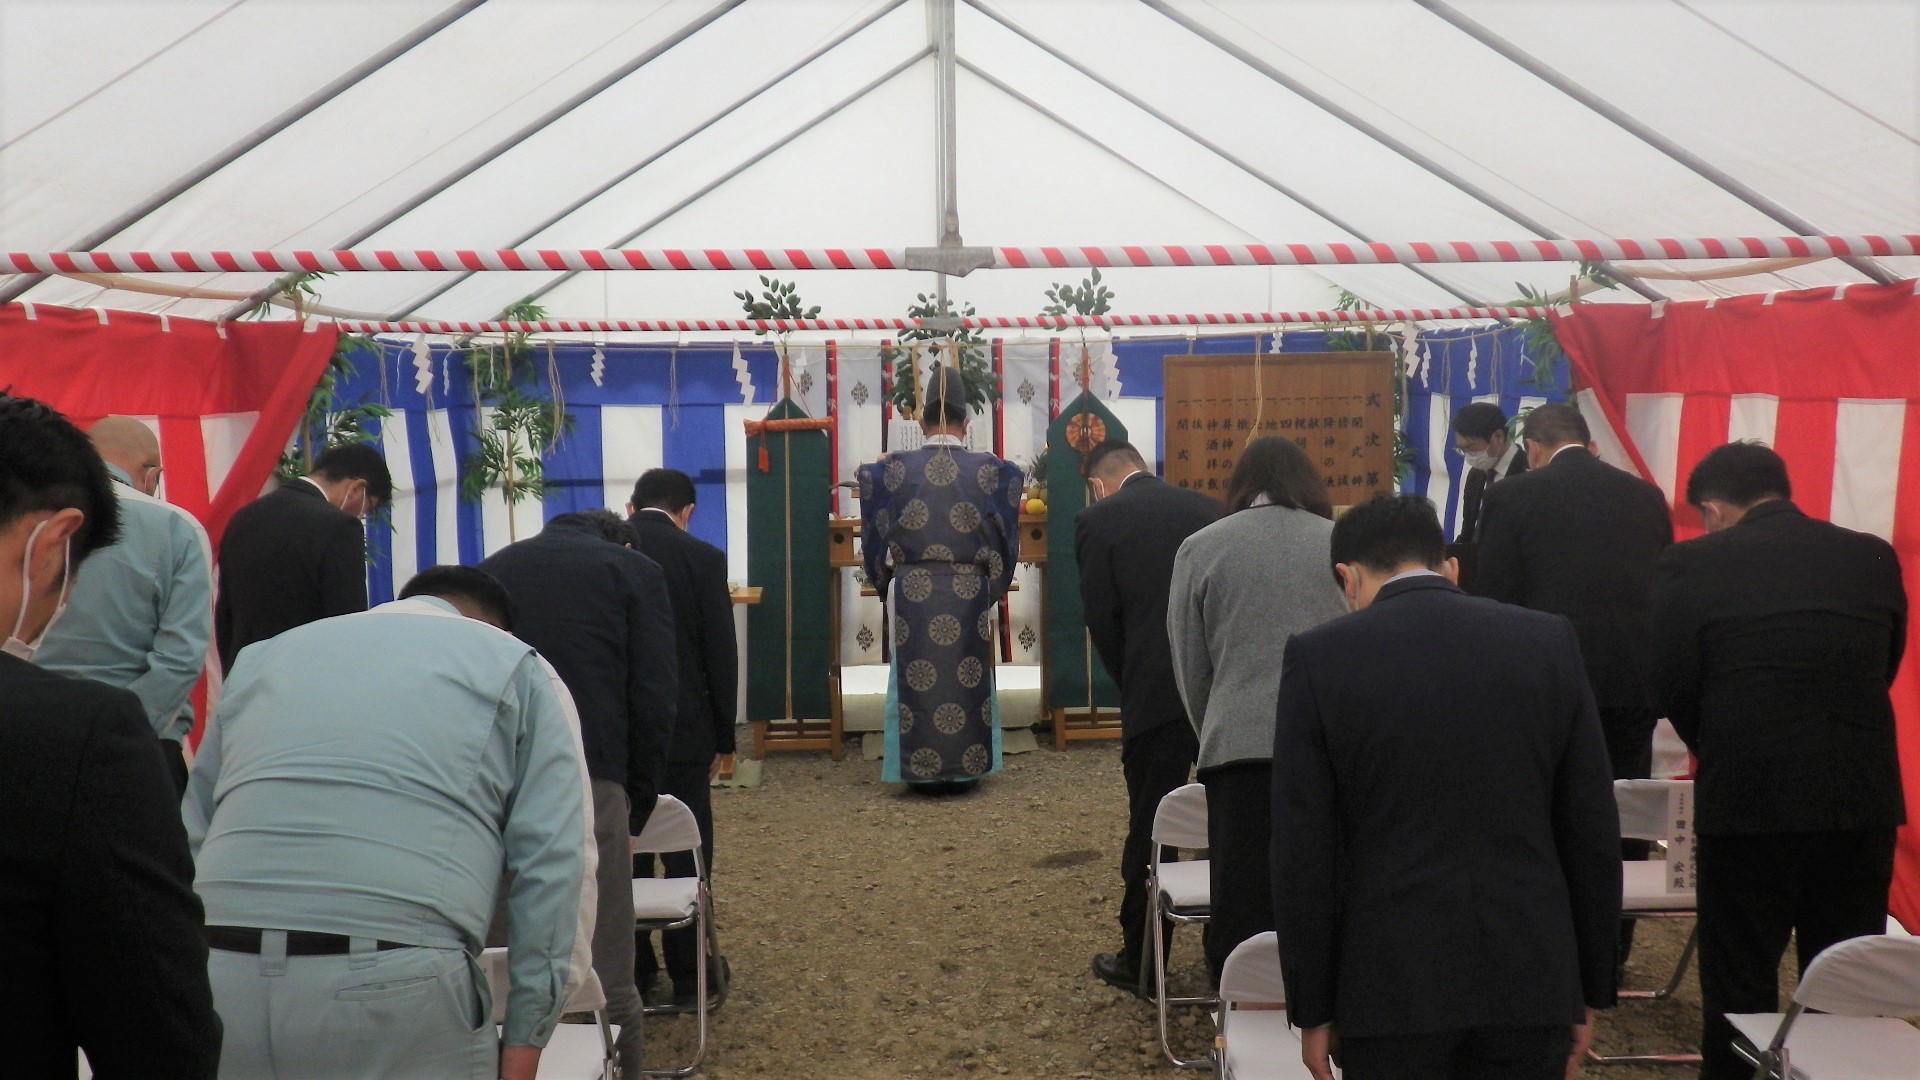 青森合浦日産建替工事の工事安全祈願祭を執り行いました。